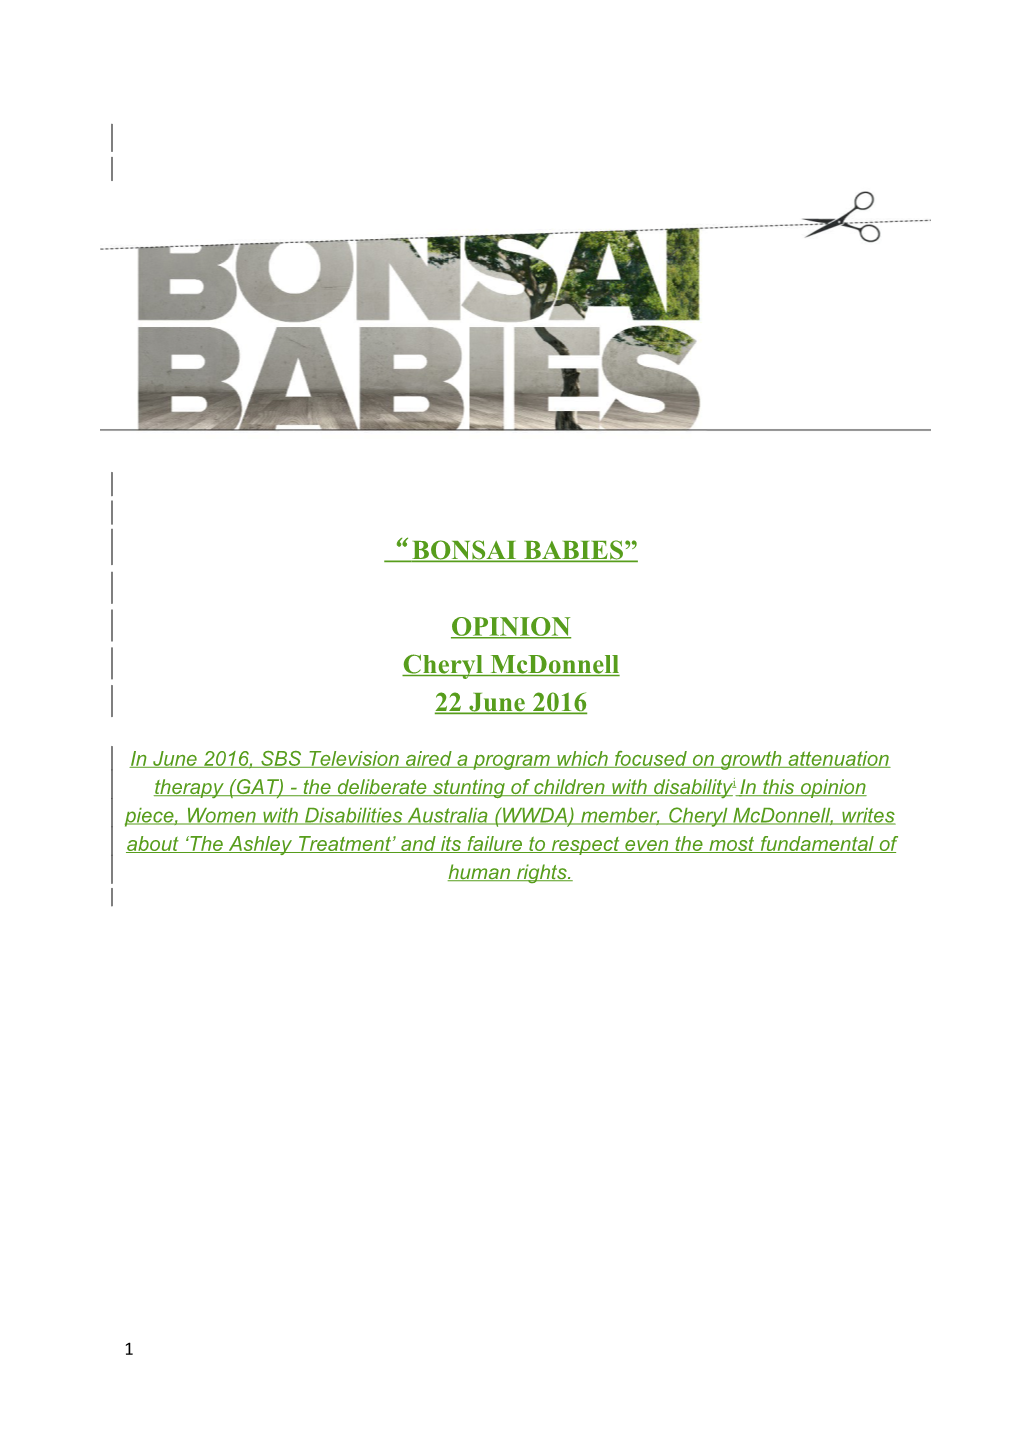 Bonsai Babies